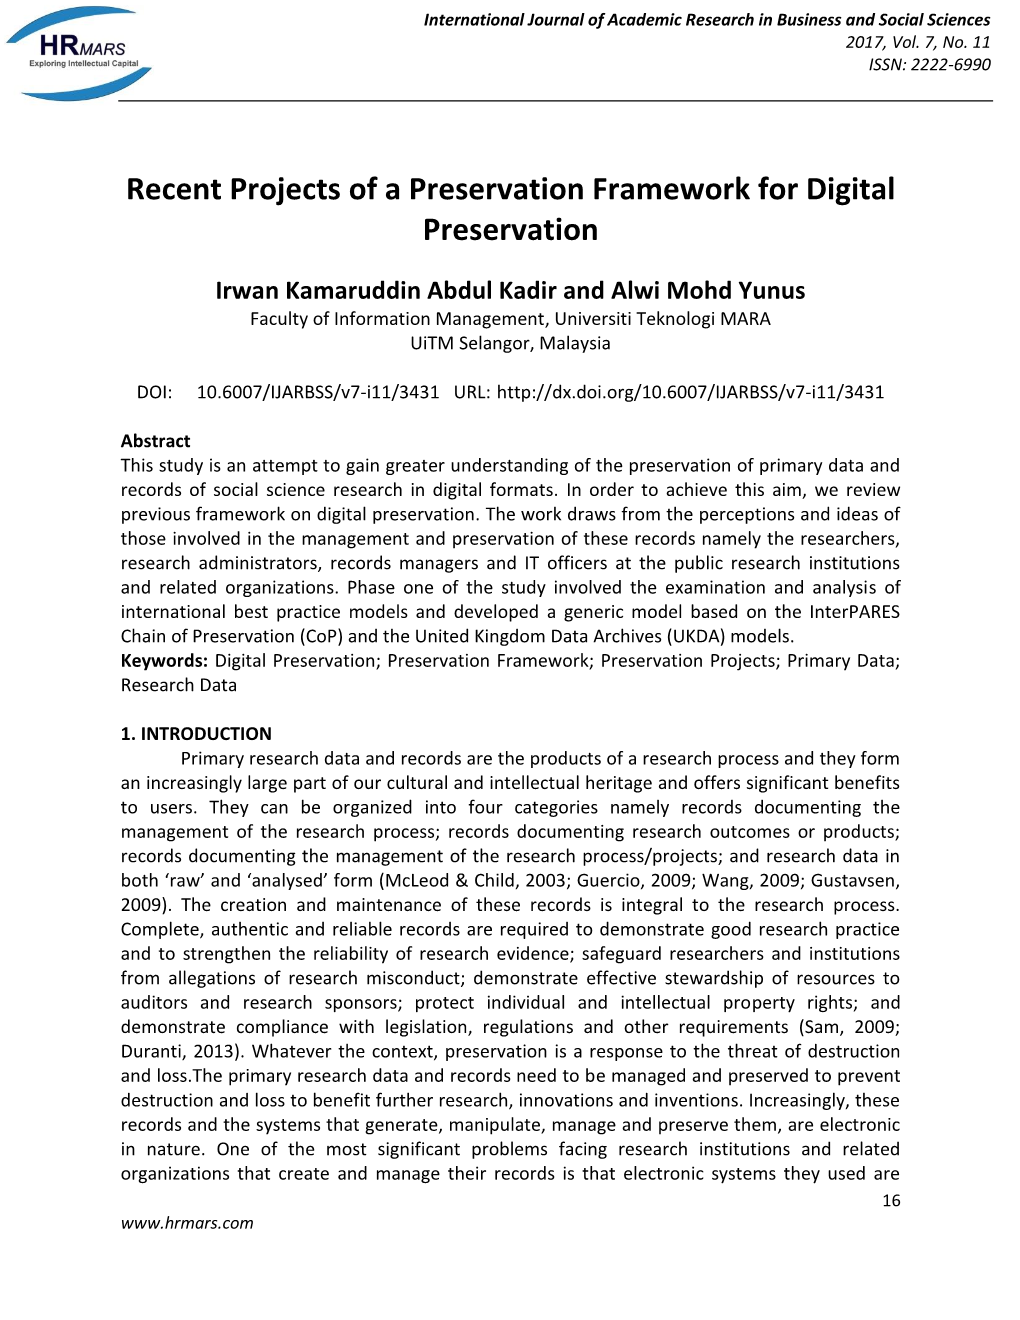 Recent Projects of a Preservation Framework for Digital Preservation